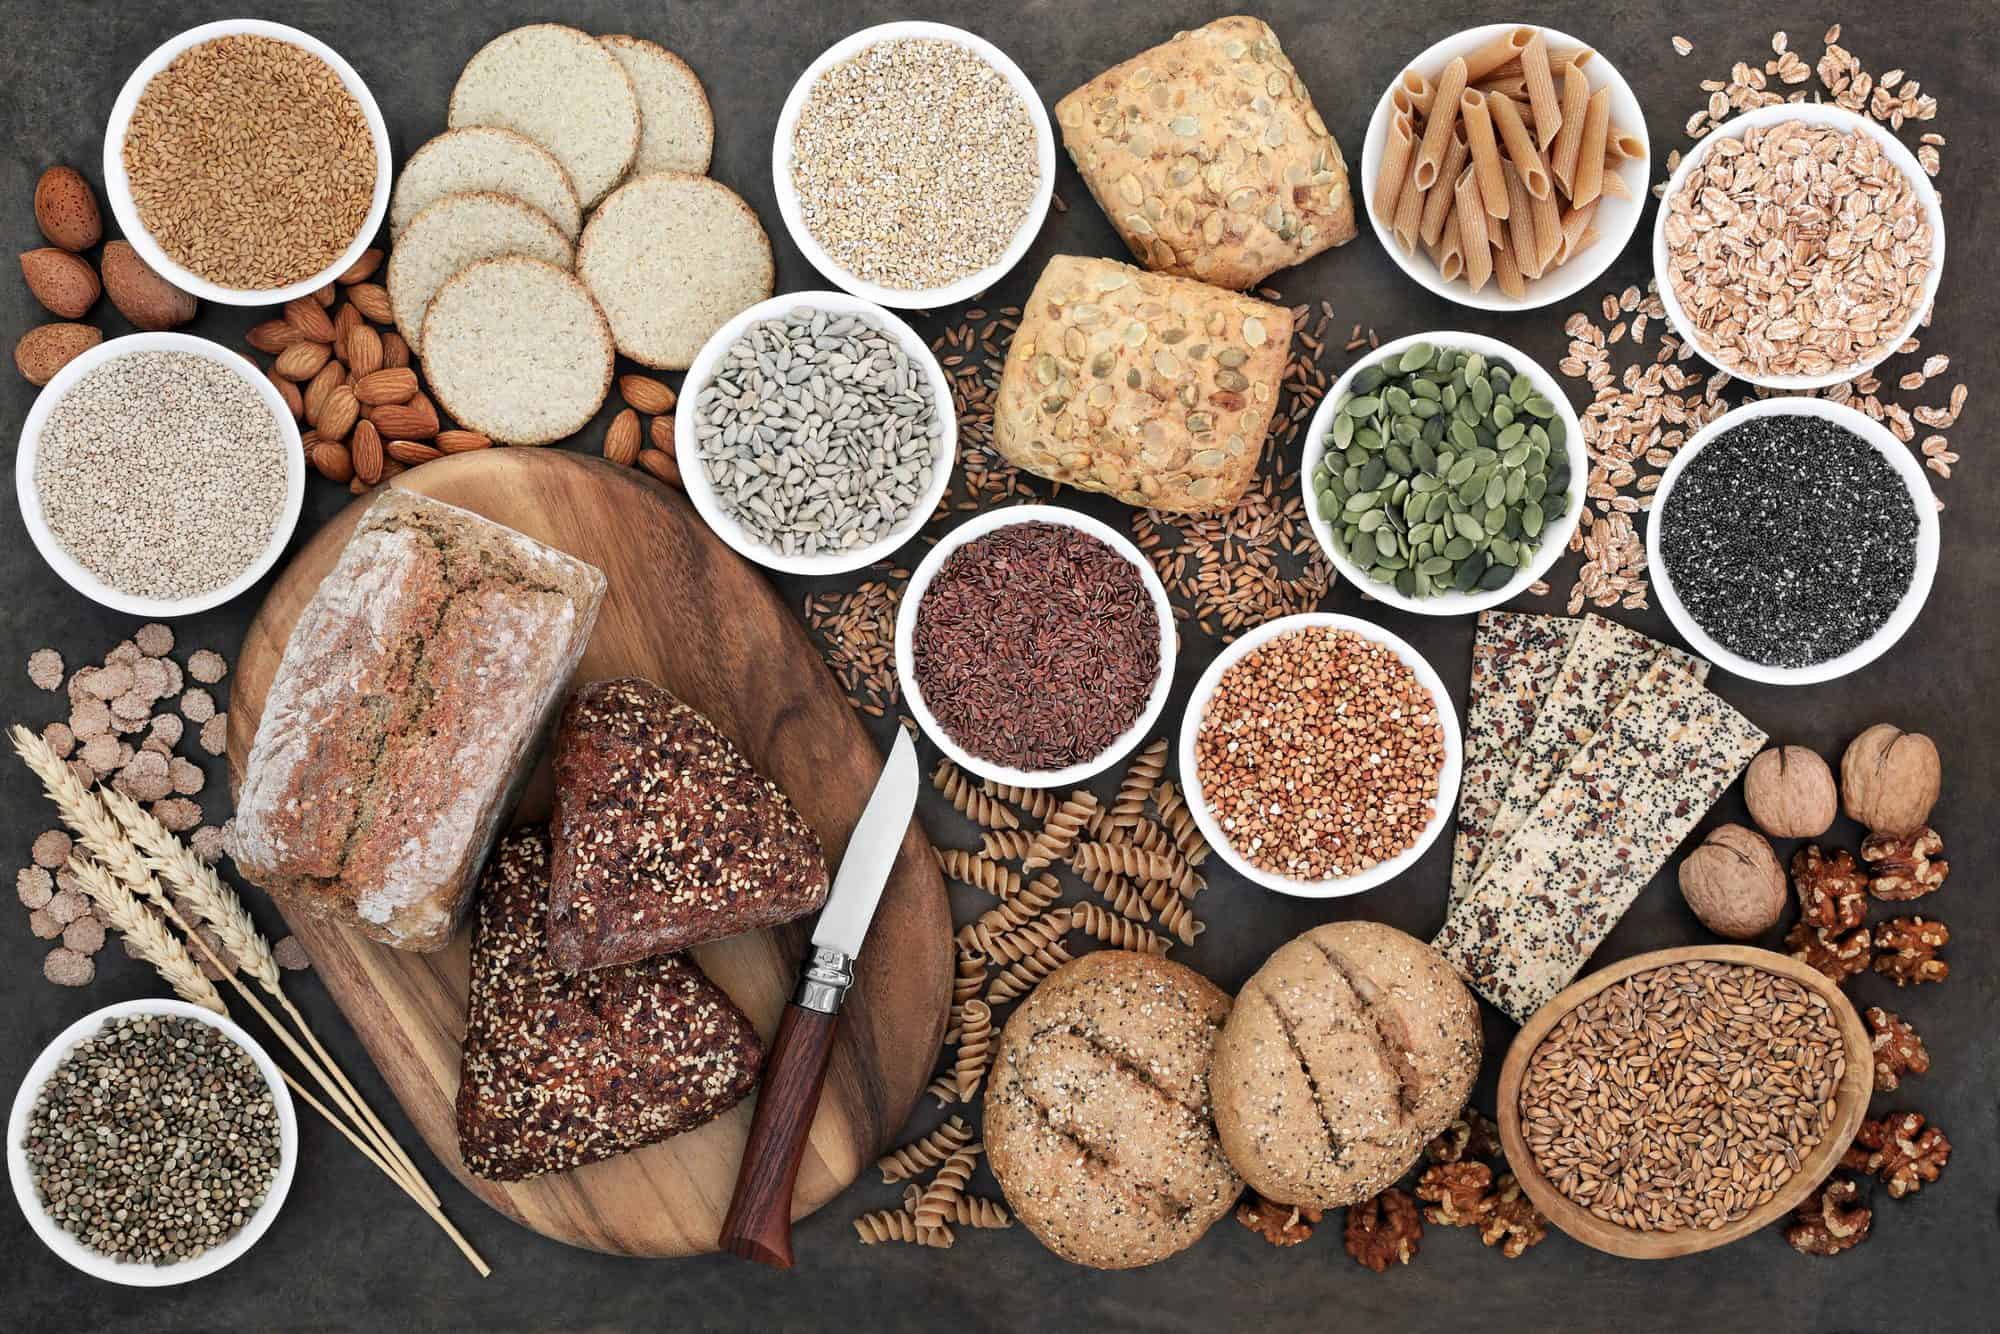 El consumo de cereales integrales y sus beneficios cardiovasculares.  ¿Cuánto debo comer?